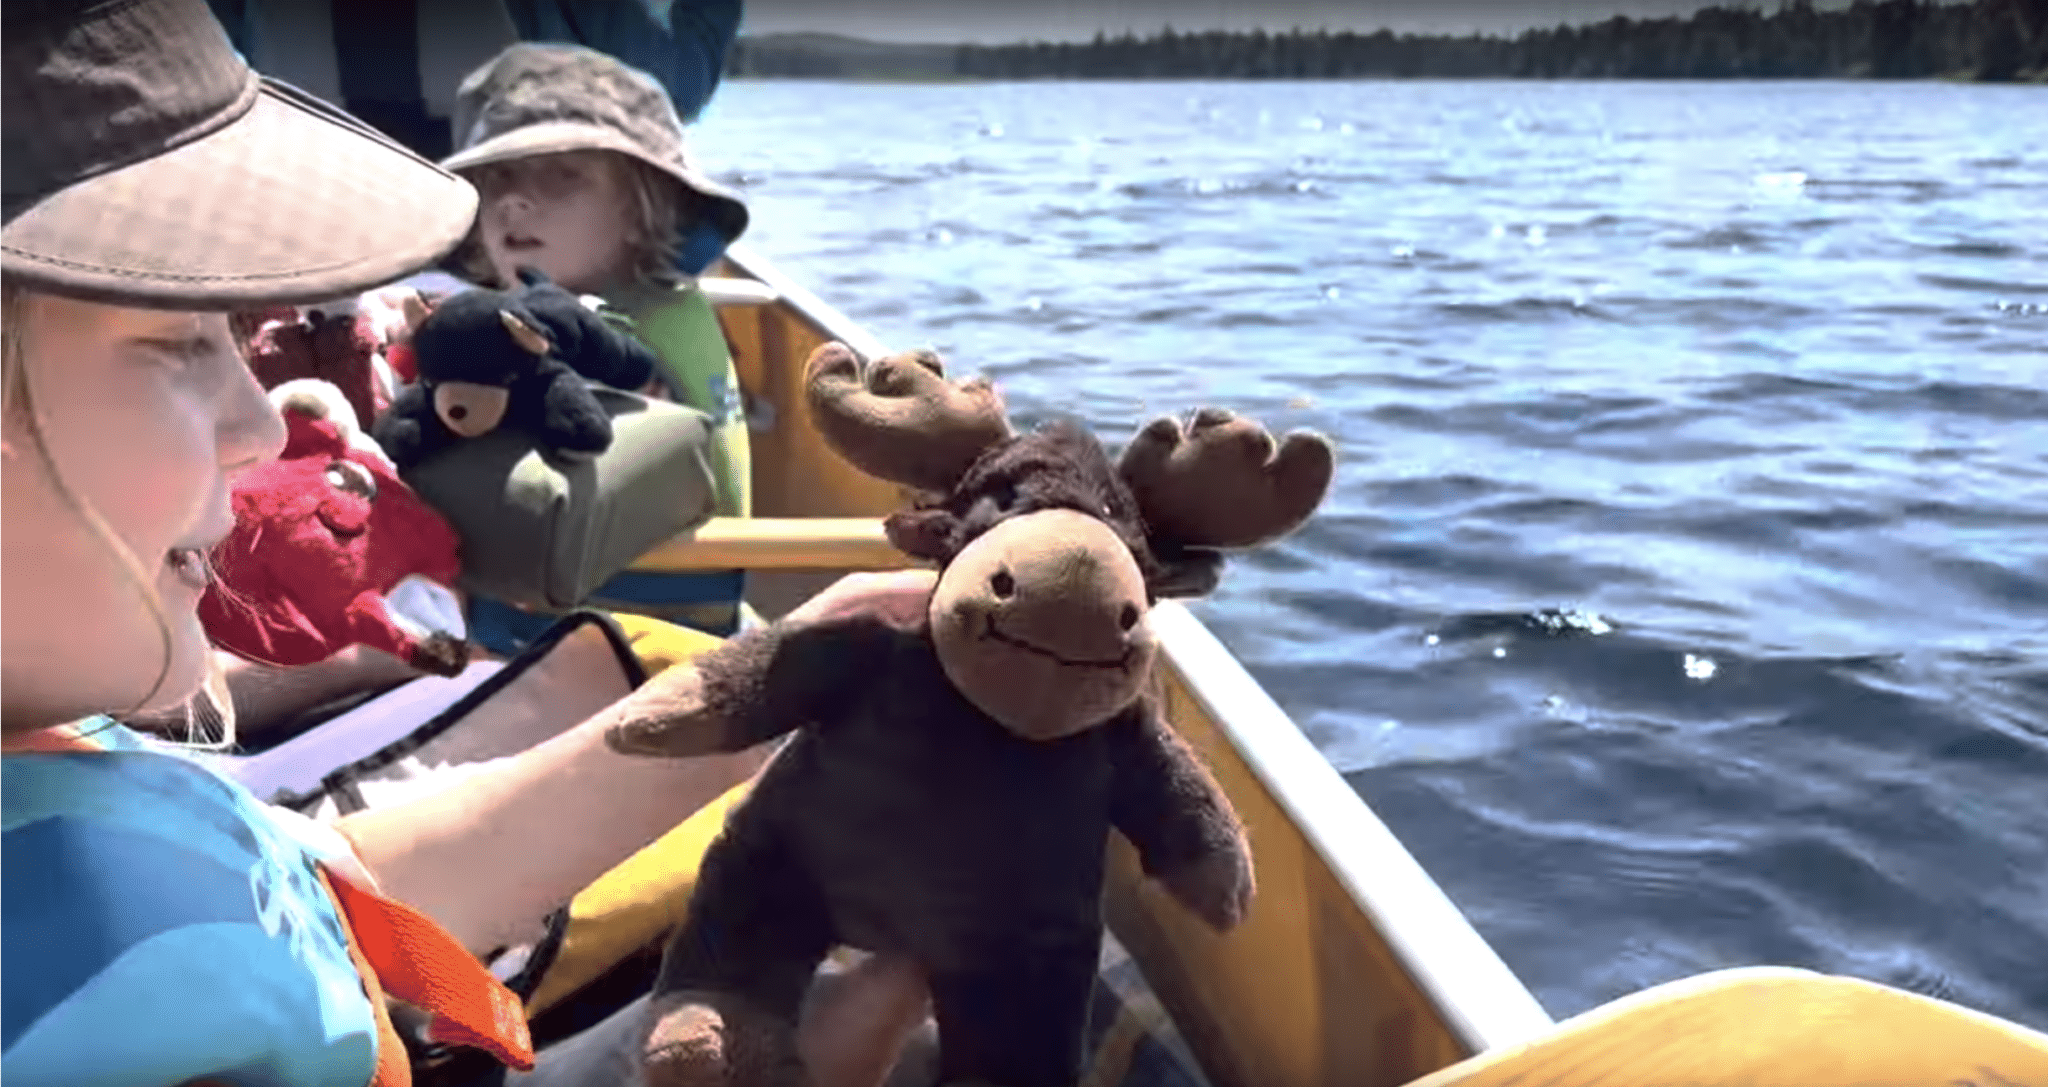 Kids and a stuffed animal moose on a canoe.